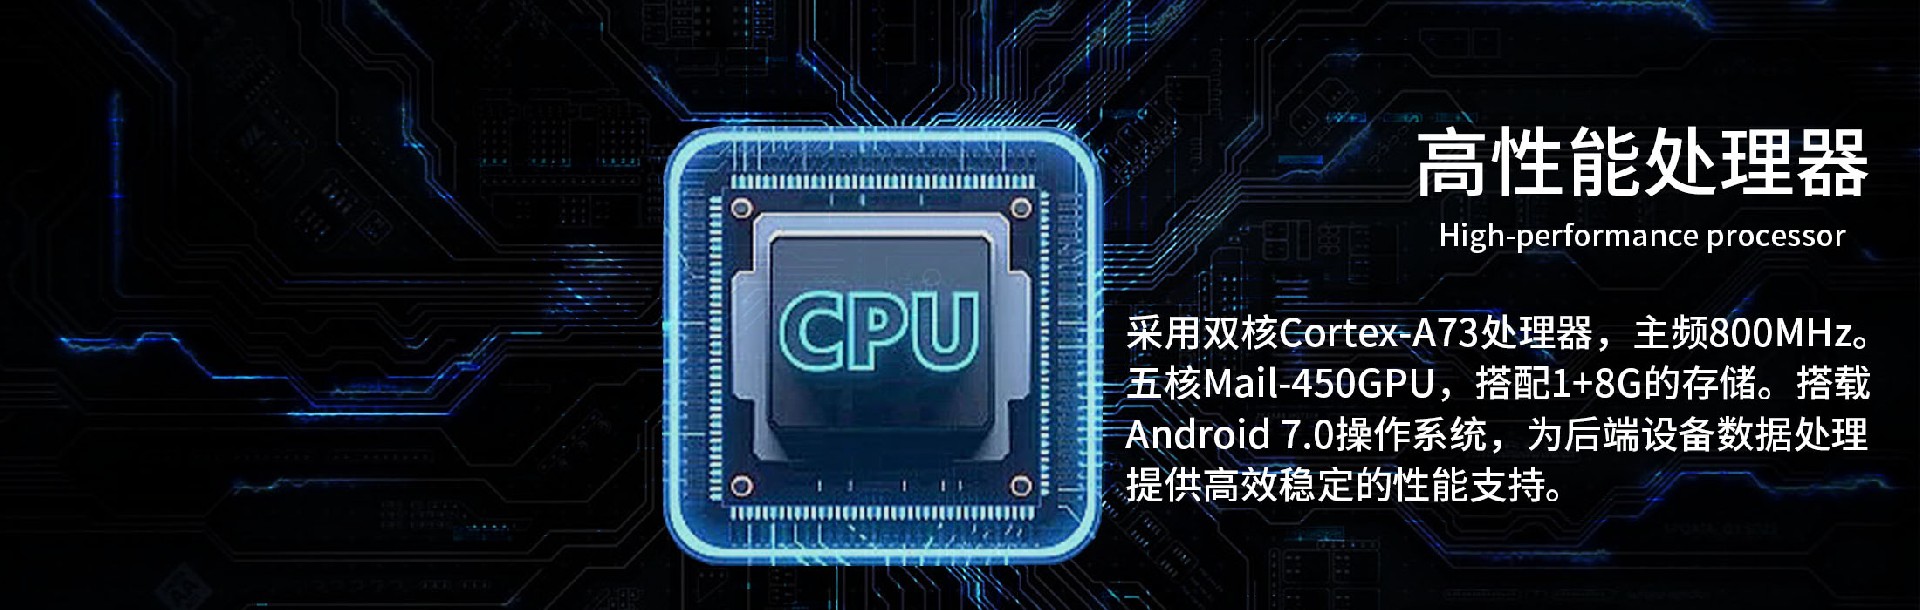 CPU处理器.jpg